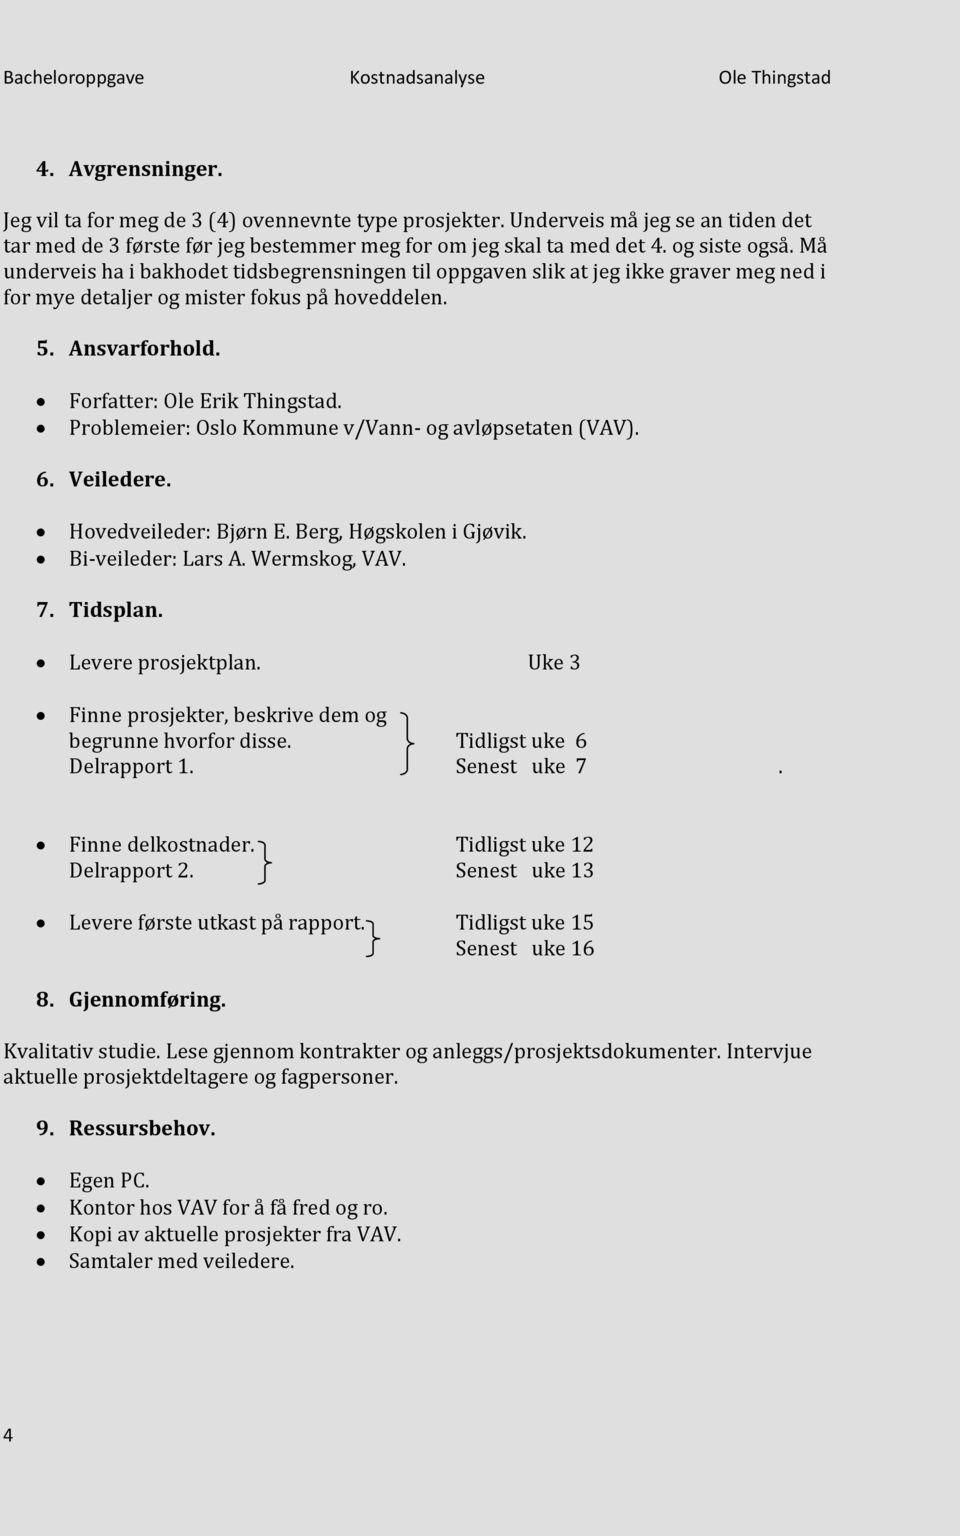 Problemeier: Oslo Kommune v/vann- og avløpsetaten (VAV). 6. Veiledere. Hovedveileder: Bjørn E. Berg, Høgskolen i Gjøvik. Bi-veileder: Lars A. Wermskog, VAV. 7. Tidsplan. Levere prosjektplan.